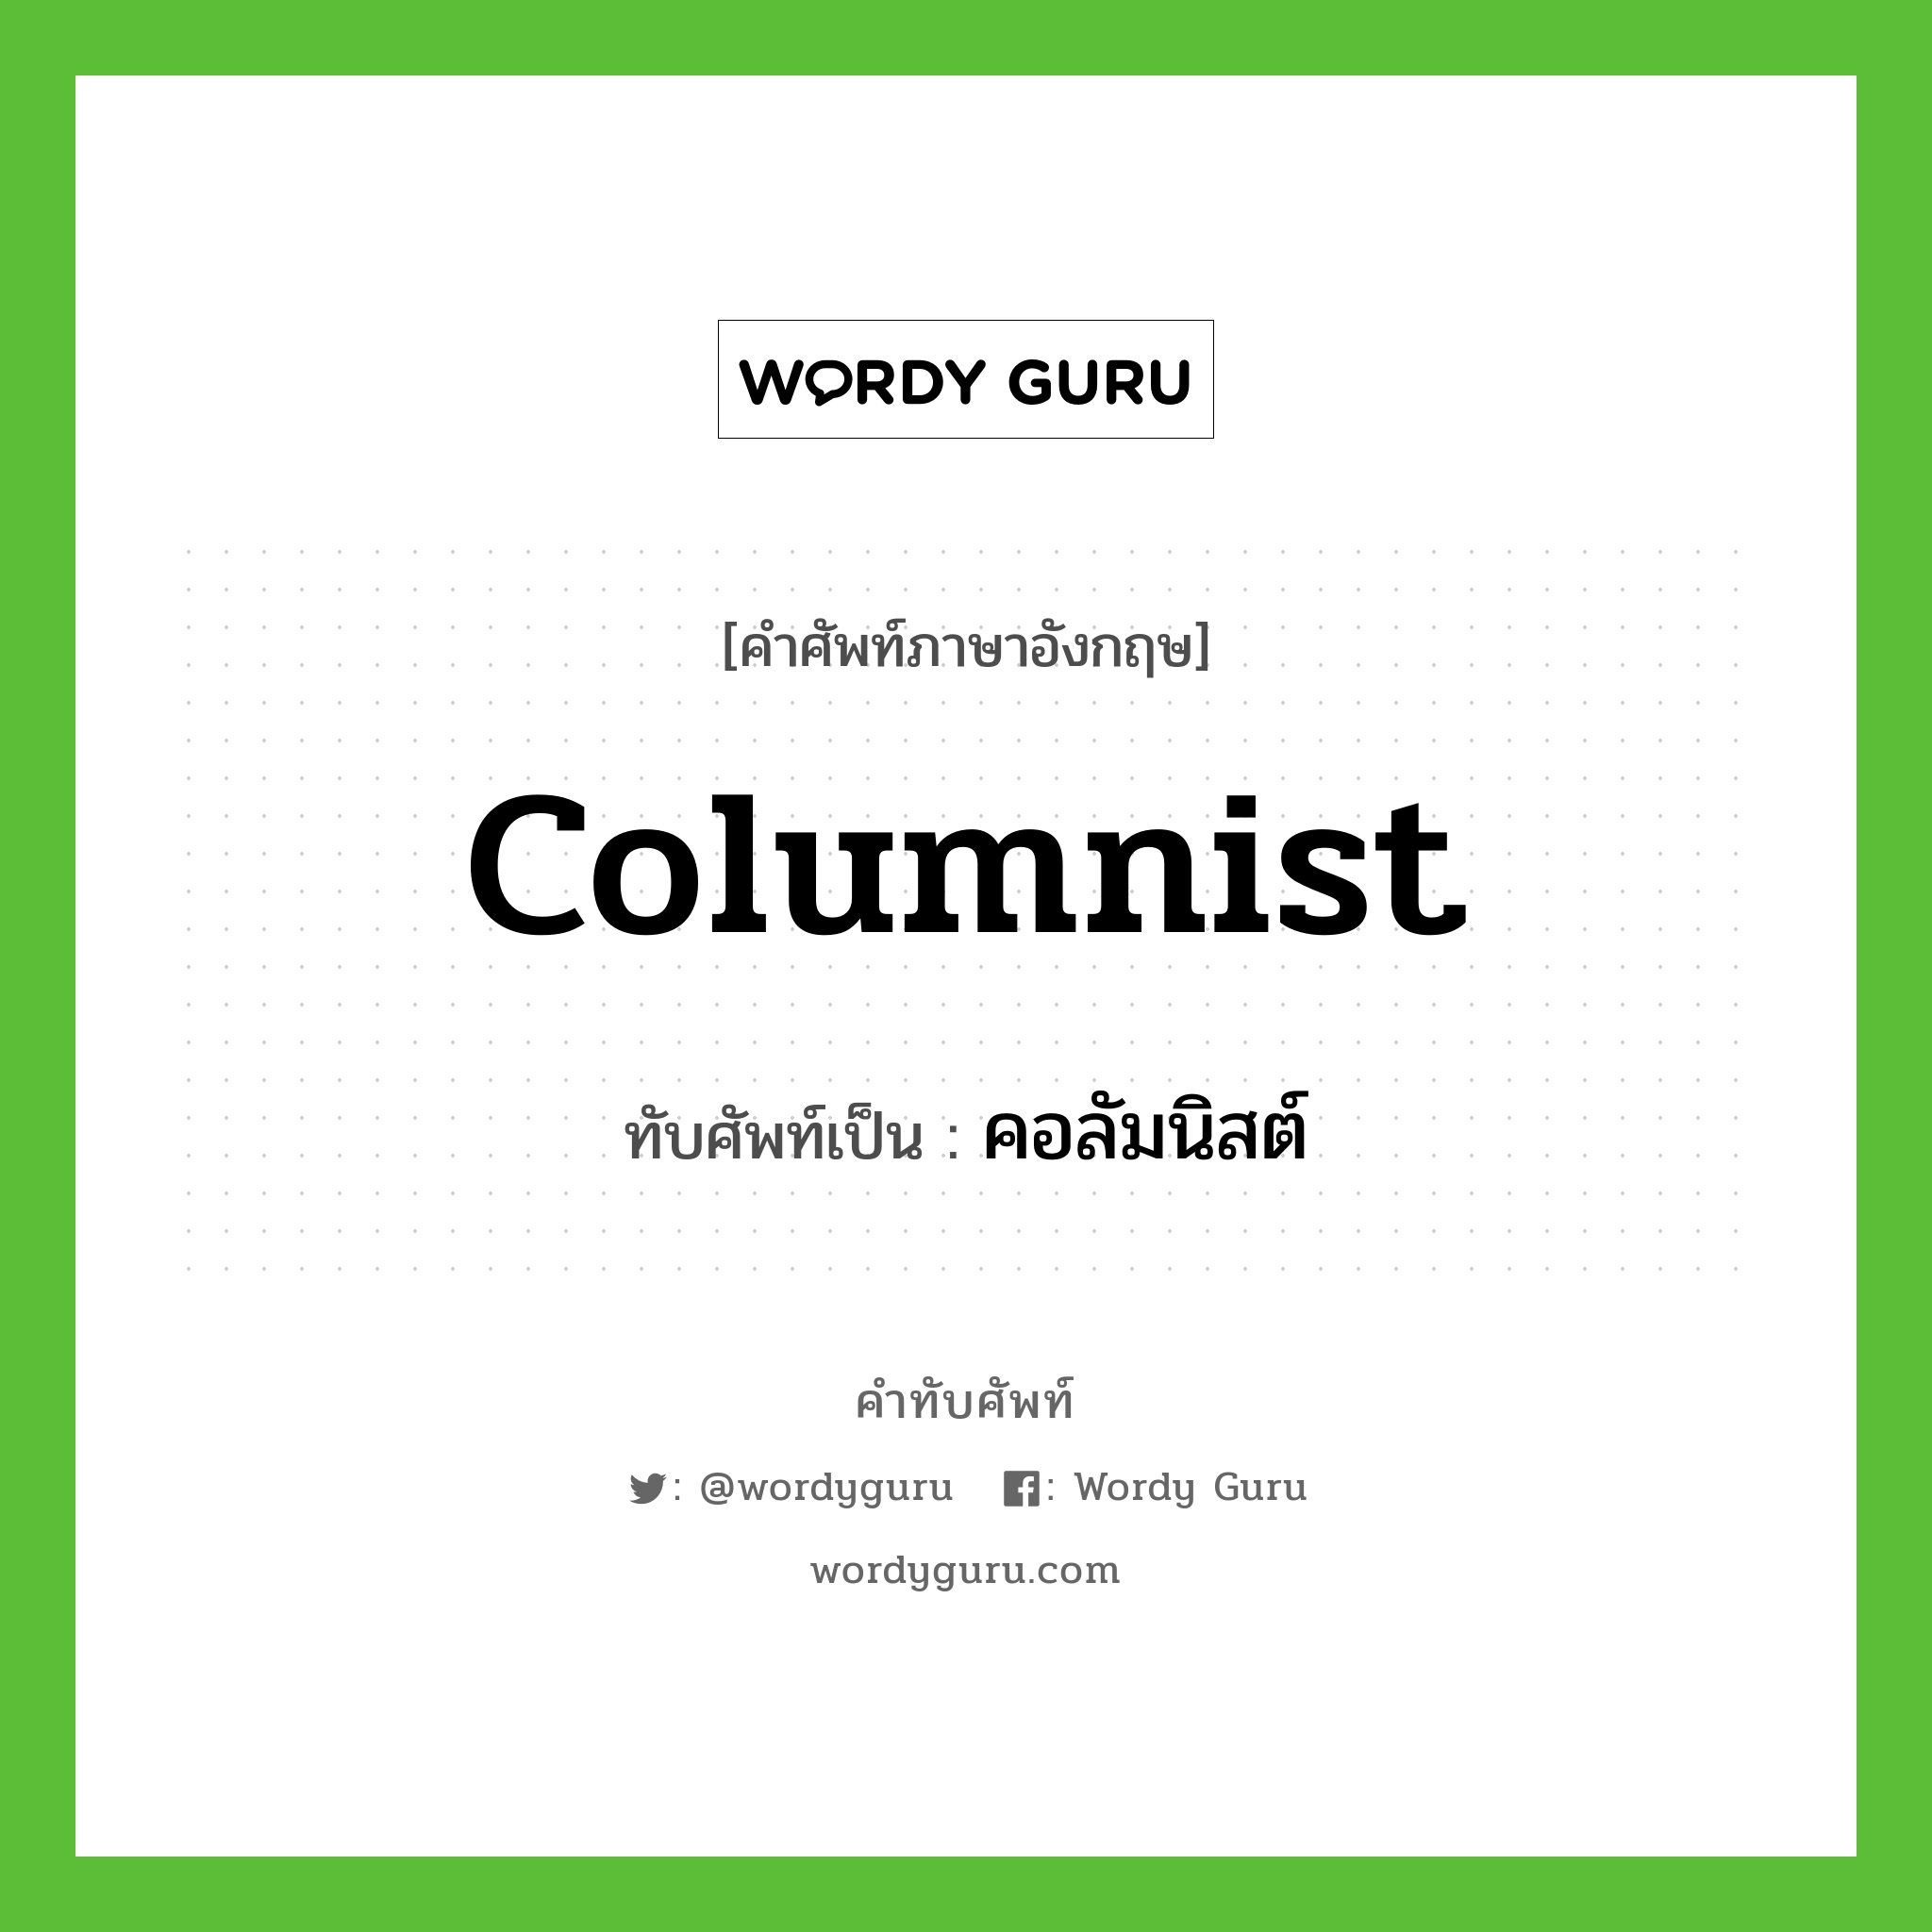 Columnist เขียนเป็นคำไทยว่าอะไร?, คำศัพท์ภาษาอังกฤษ Columnist ทับศัพท์เป็น คอลัมนิสต์